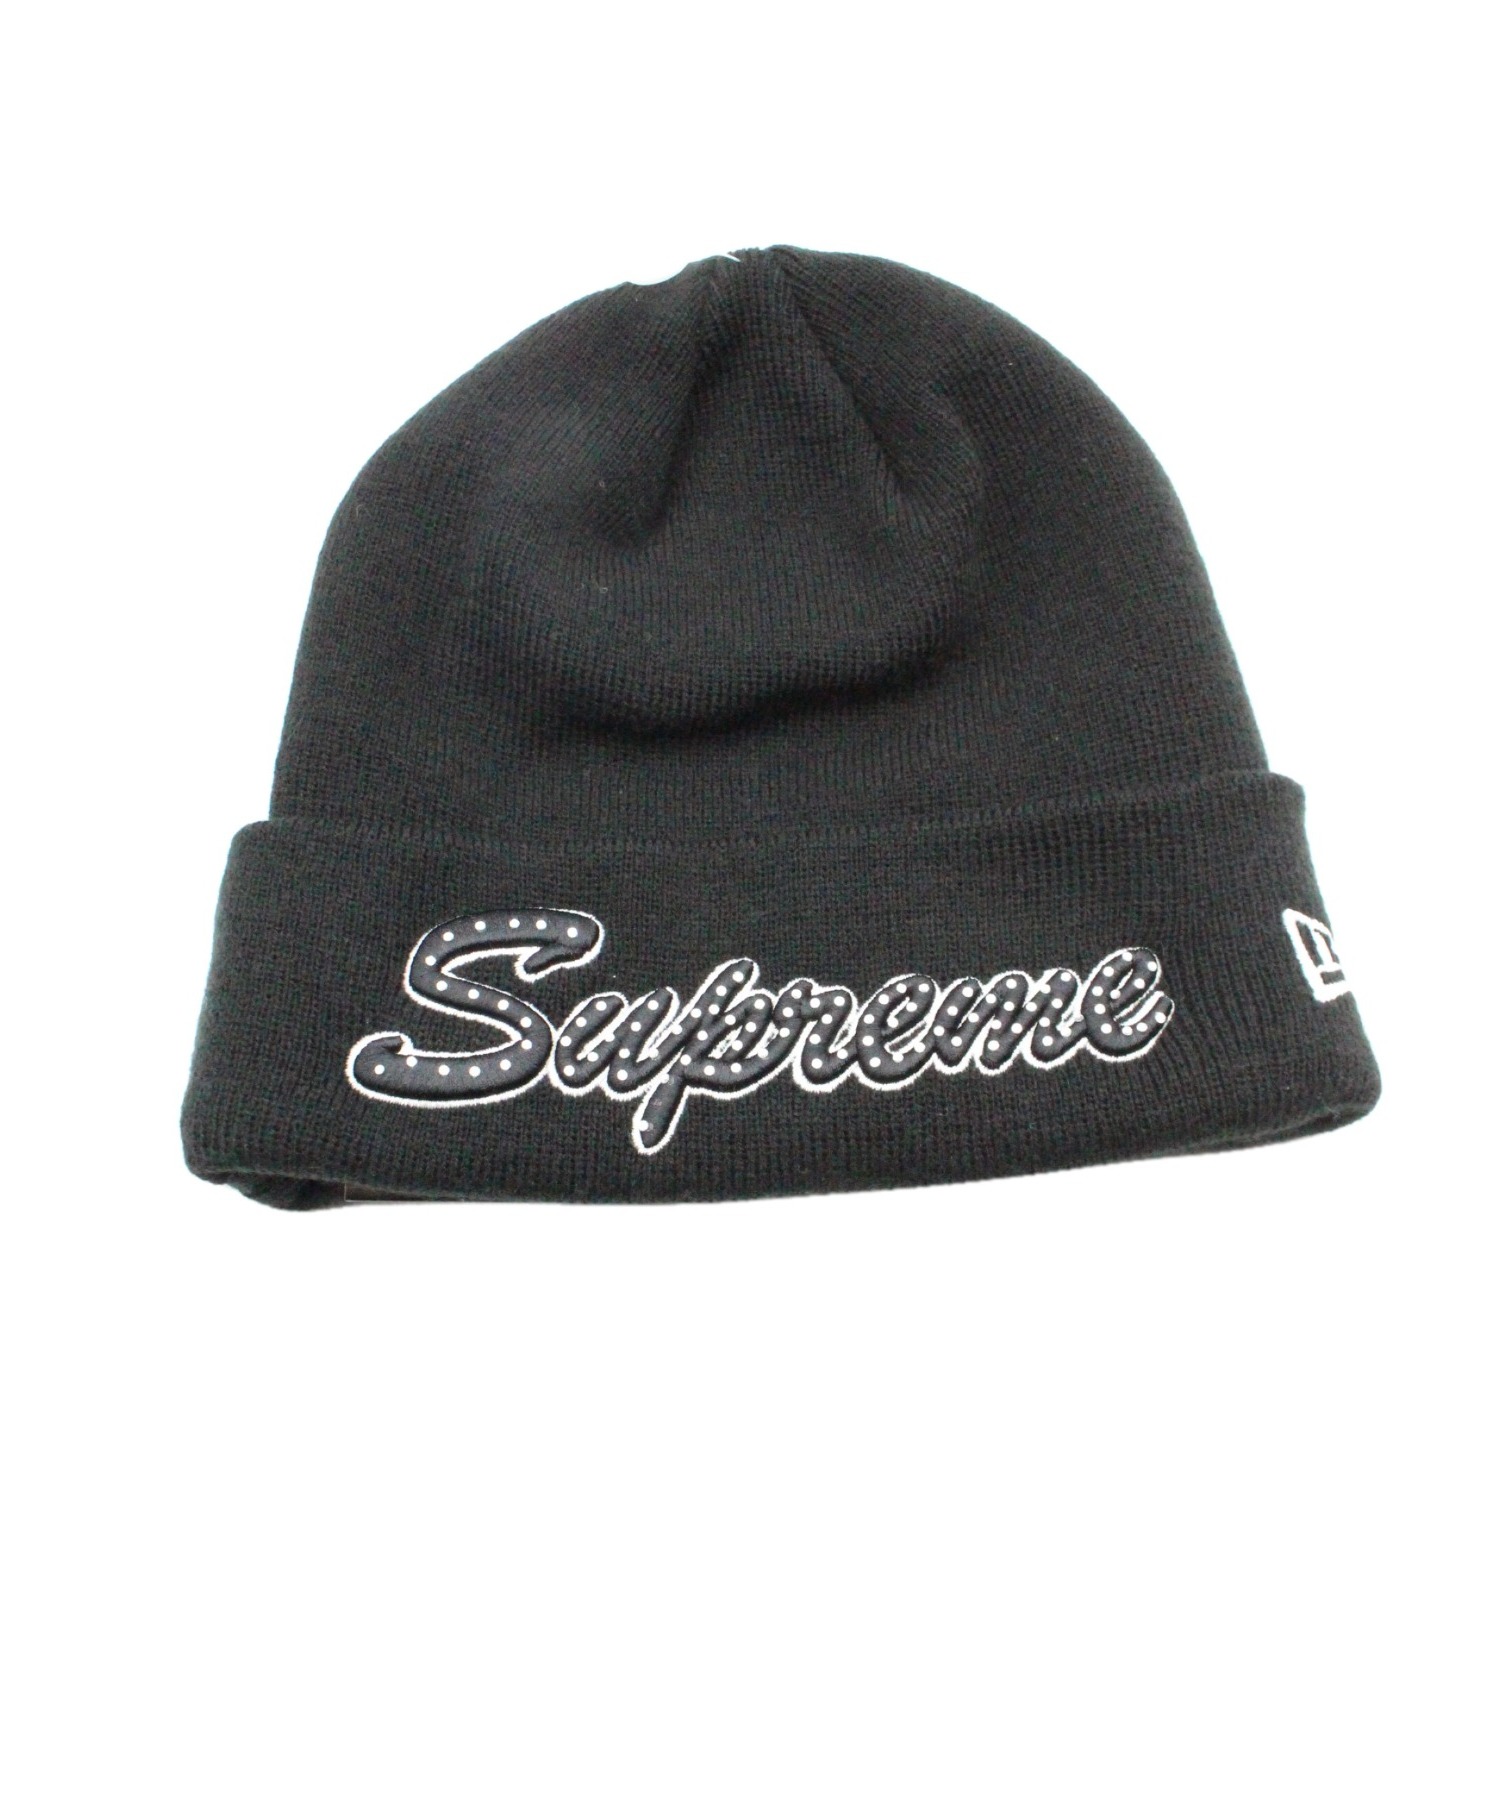 ニット】 Supreme - supreme neweraニット帽の通販 by my shop